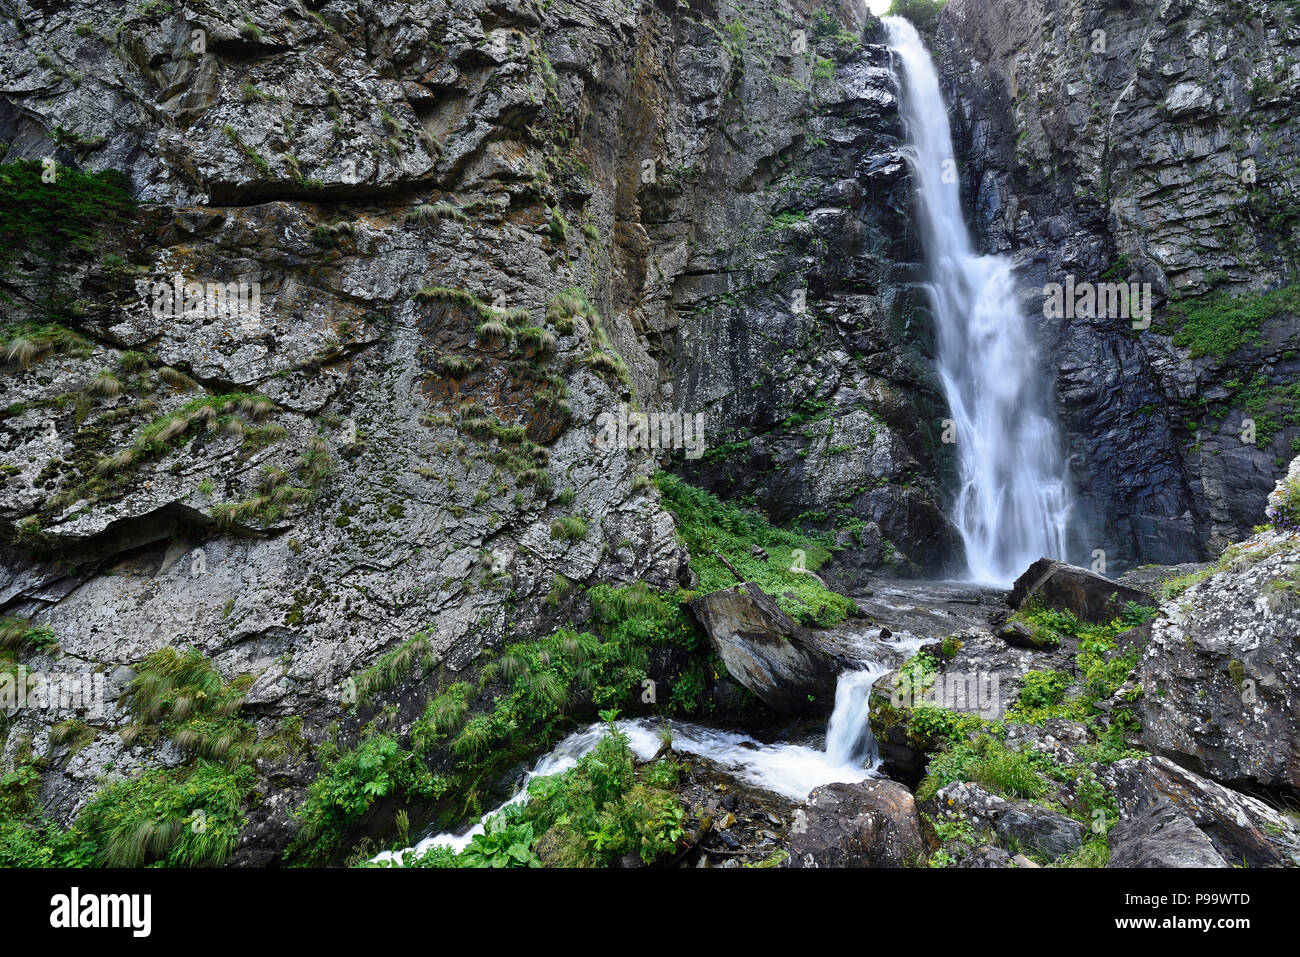 Gveleti de grandes chutes d'être dans une gorge Dariali près de la ville de Kazbegi dans les montagnes du Caucase, Geprgia Banque D'Images